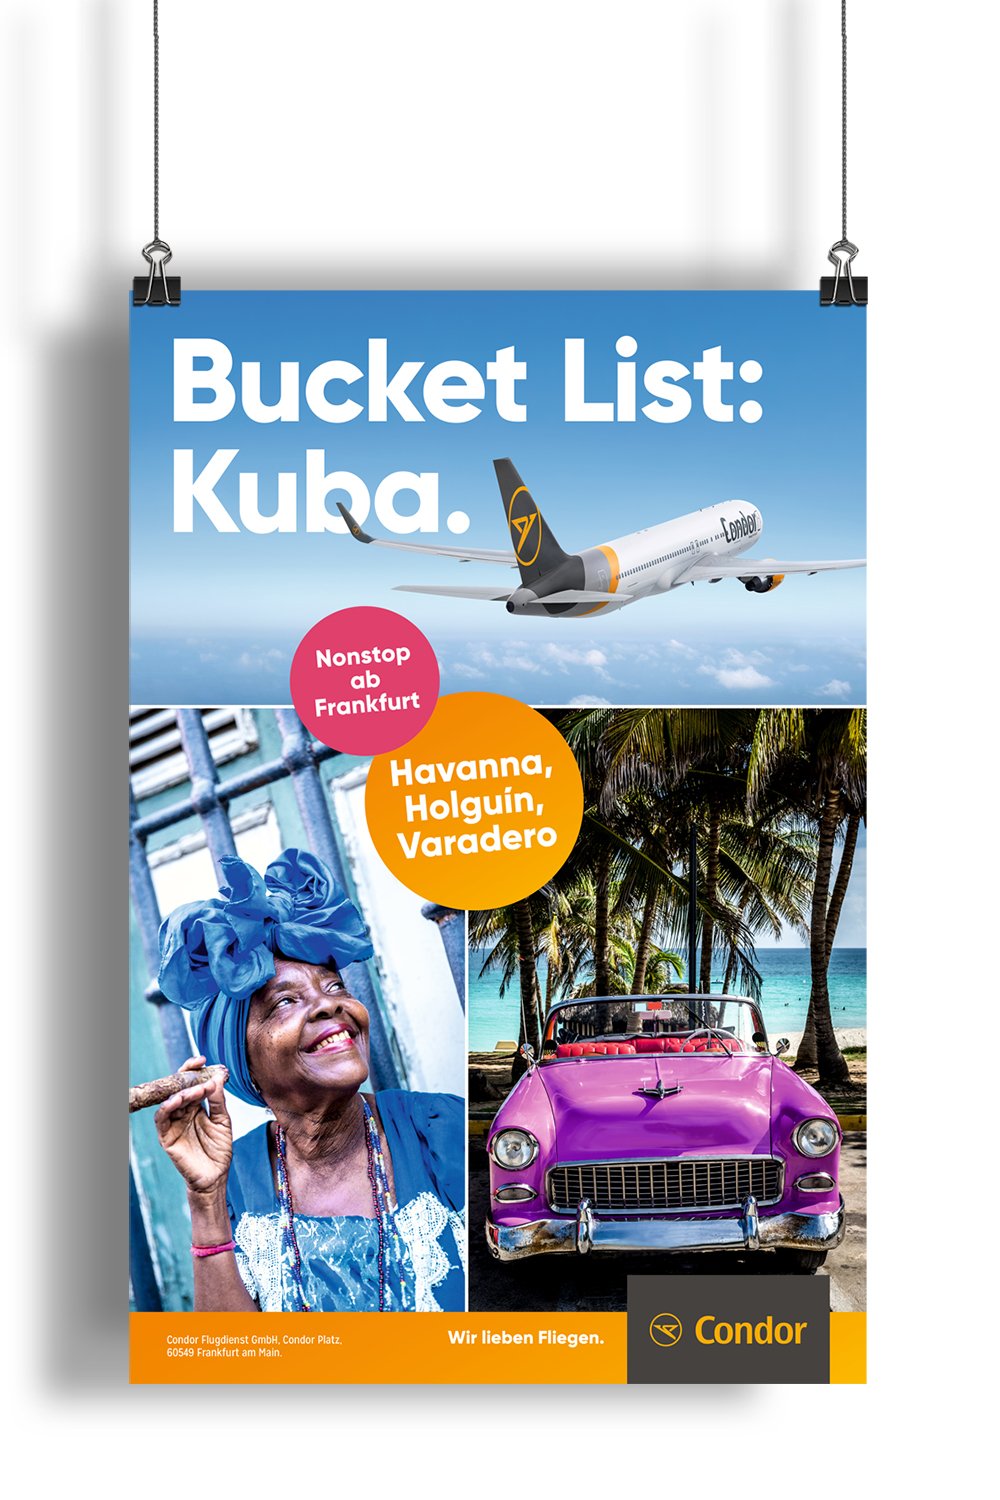 Excite Werbeagentur Condor Plakat mit Schriftzug "Bucket List: Kuba."